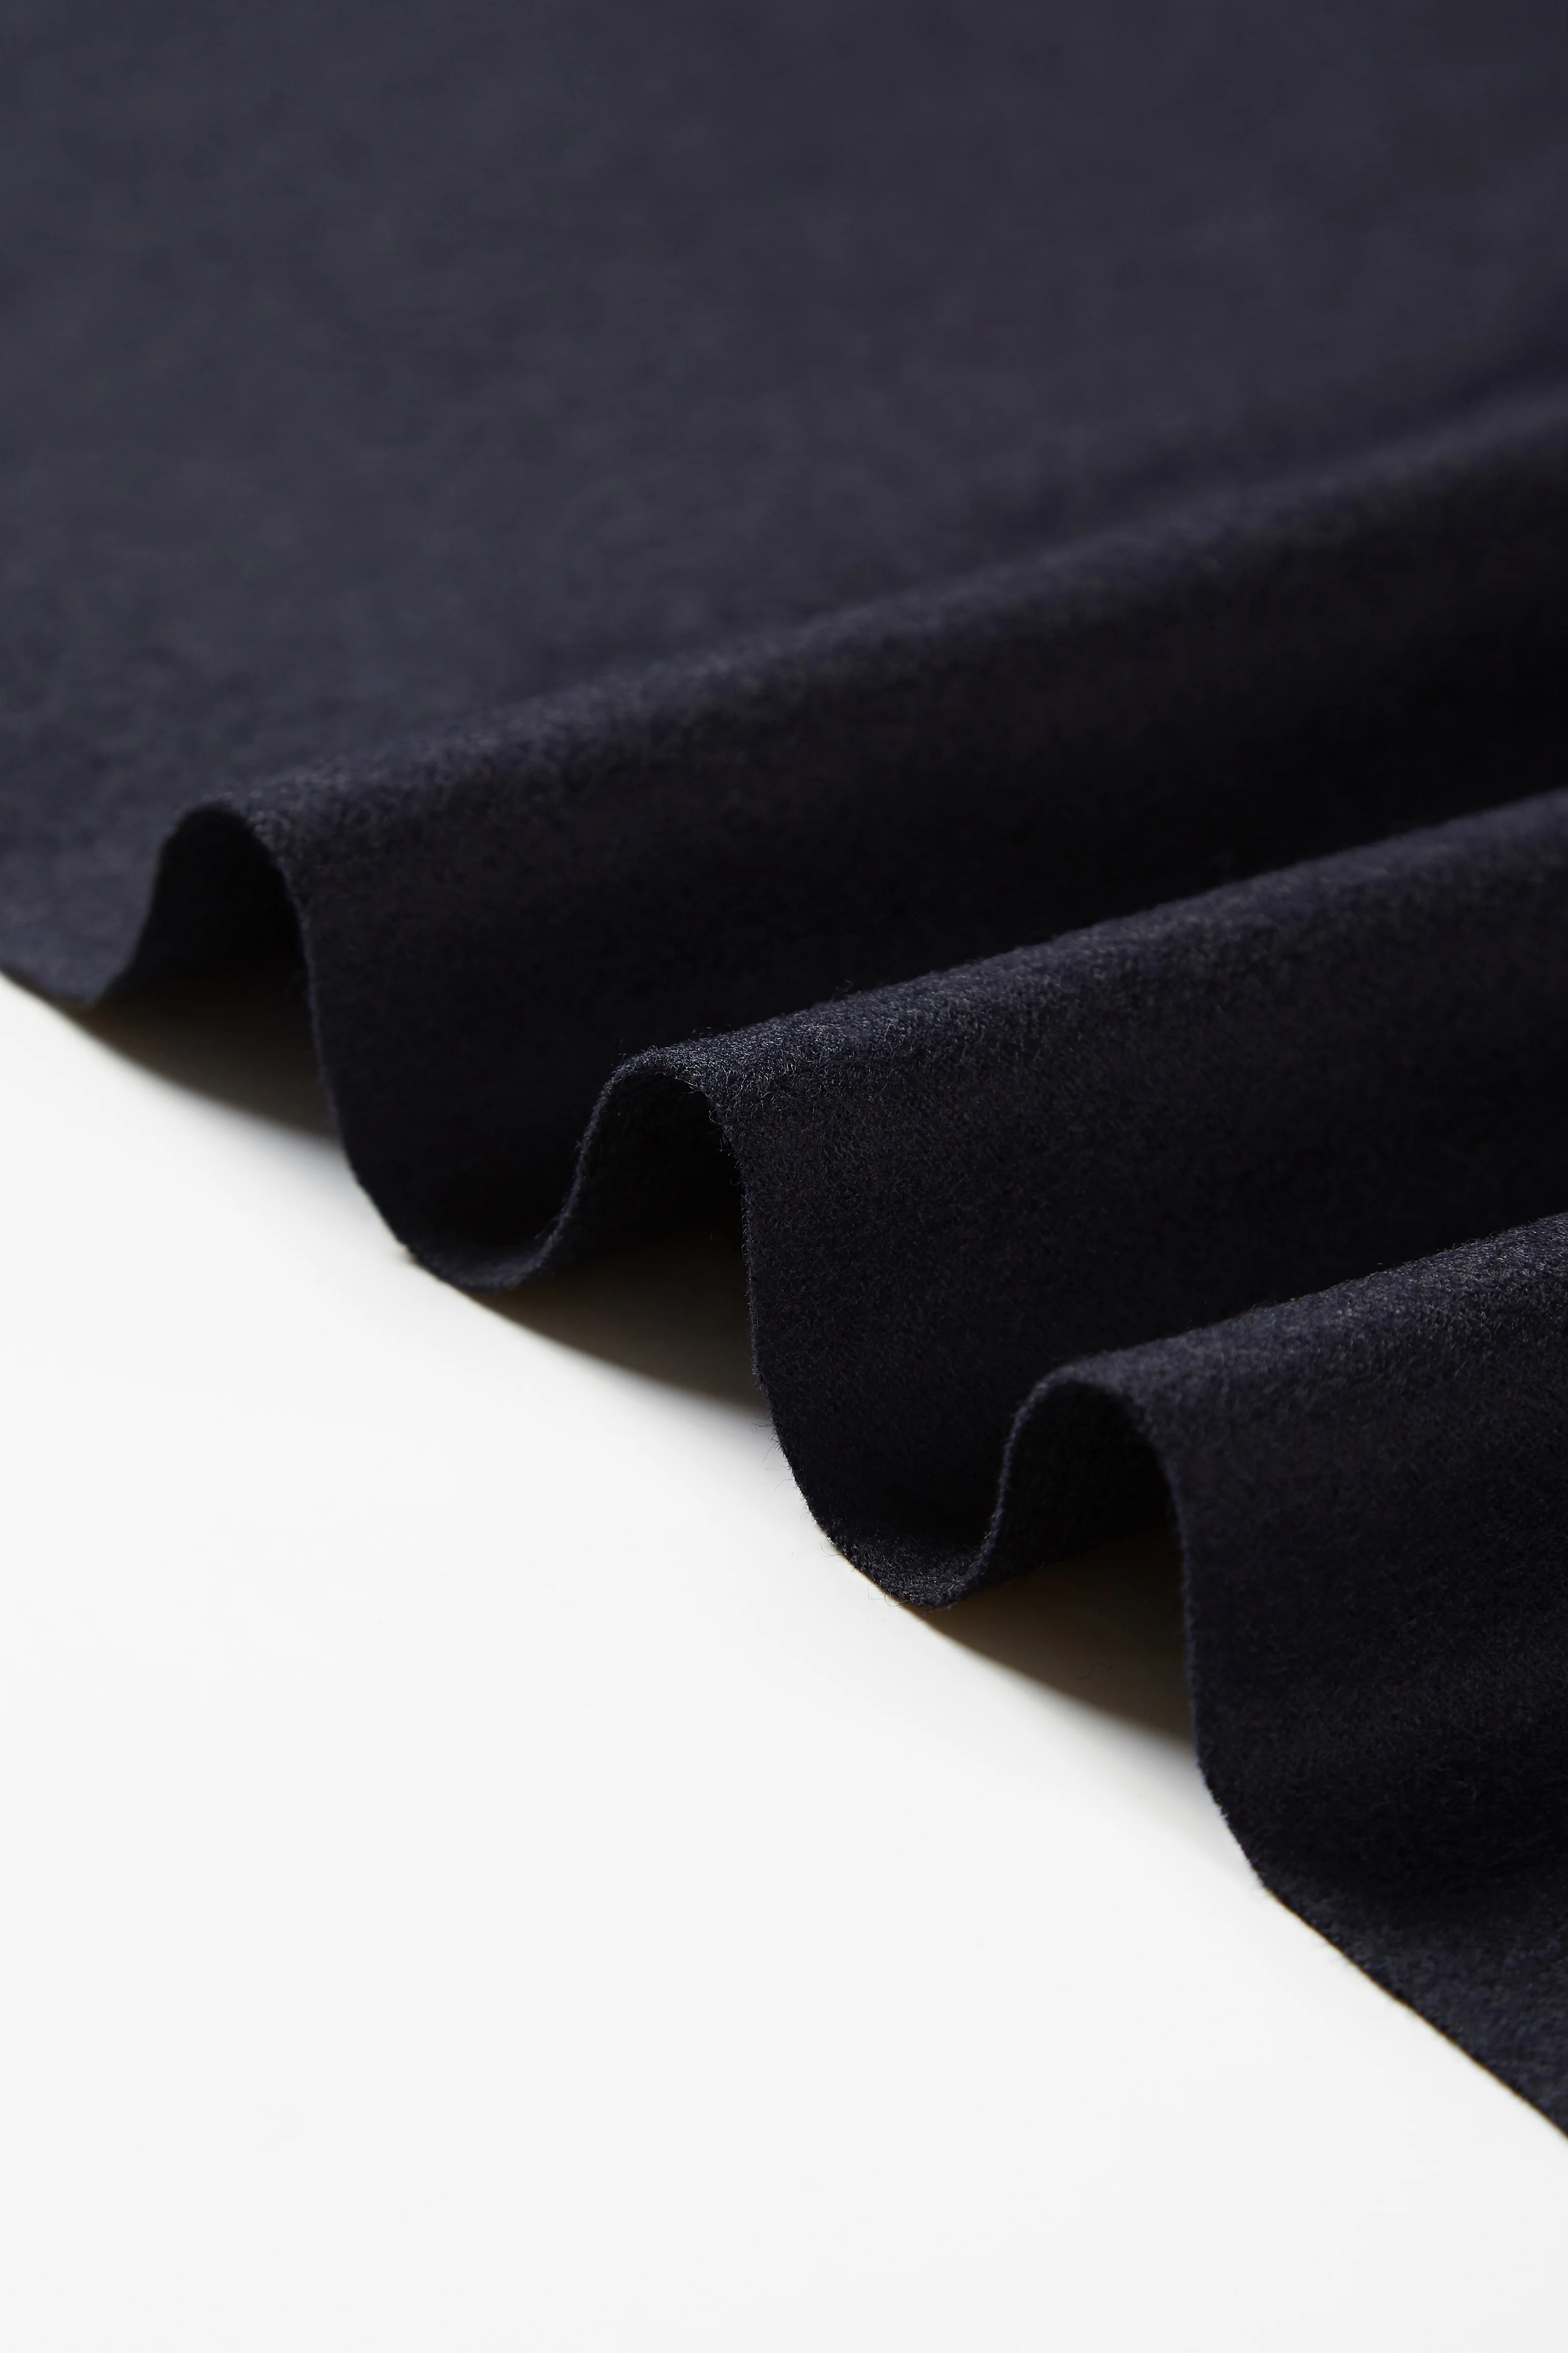 Высококачественная Роскошная итальянская кашемировая ткань, удобная мягкая кашемировая ткань из 70% шерсти мериноса для пальто